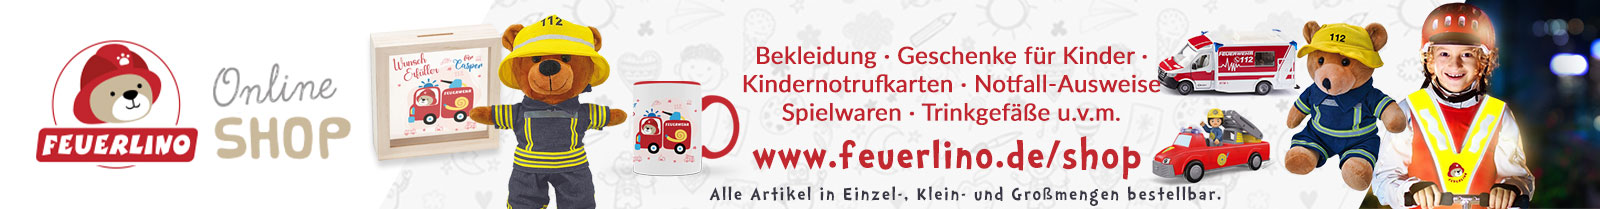 Feuerlino Onlineshop - Fanshop für kleine Feuerwehrfans - Kindernotrufkarten und Notfall-Ausweise online bestellen